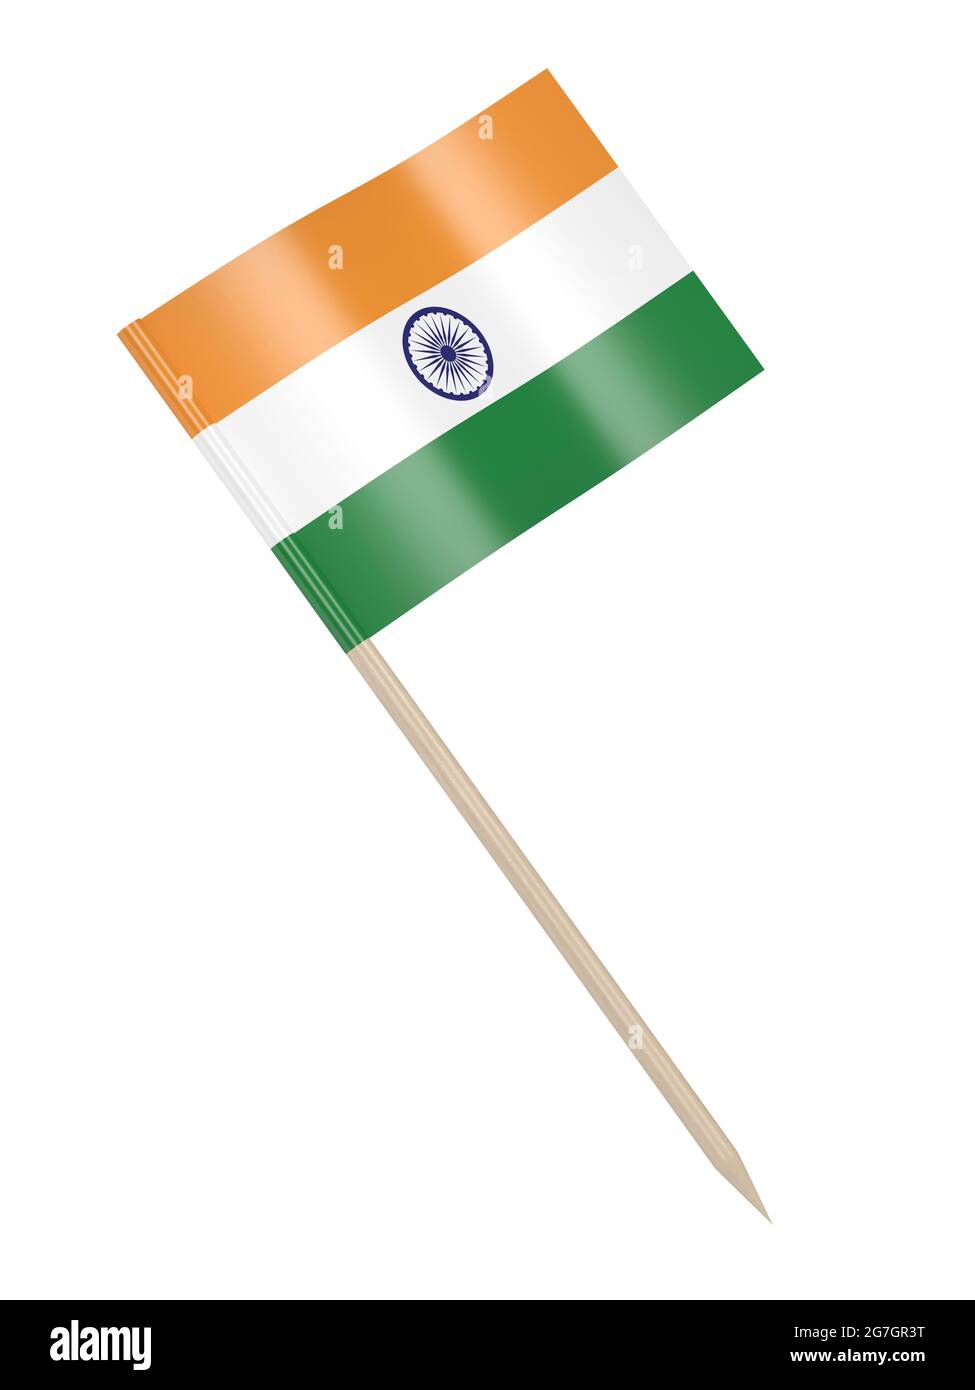 India flag toothpick isolated on white background Stock Photo